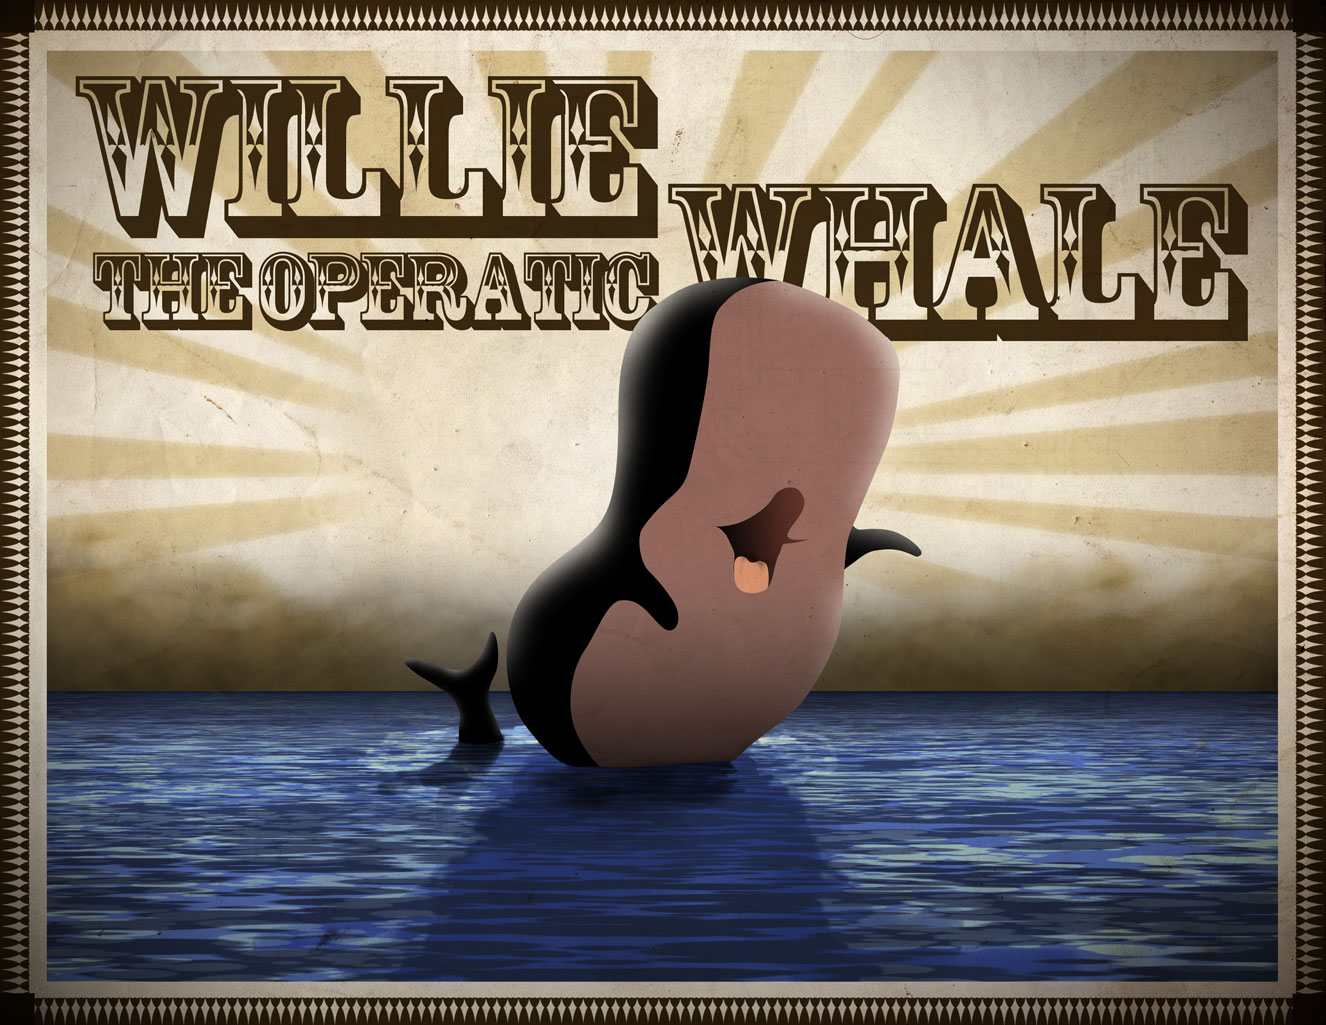 http://orig09.deviantart.net/4d10/f/2007/293/5/a/willie_the_whale_by_heavyweighthowe.jpg